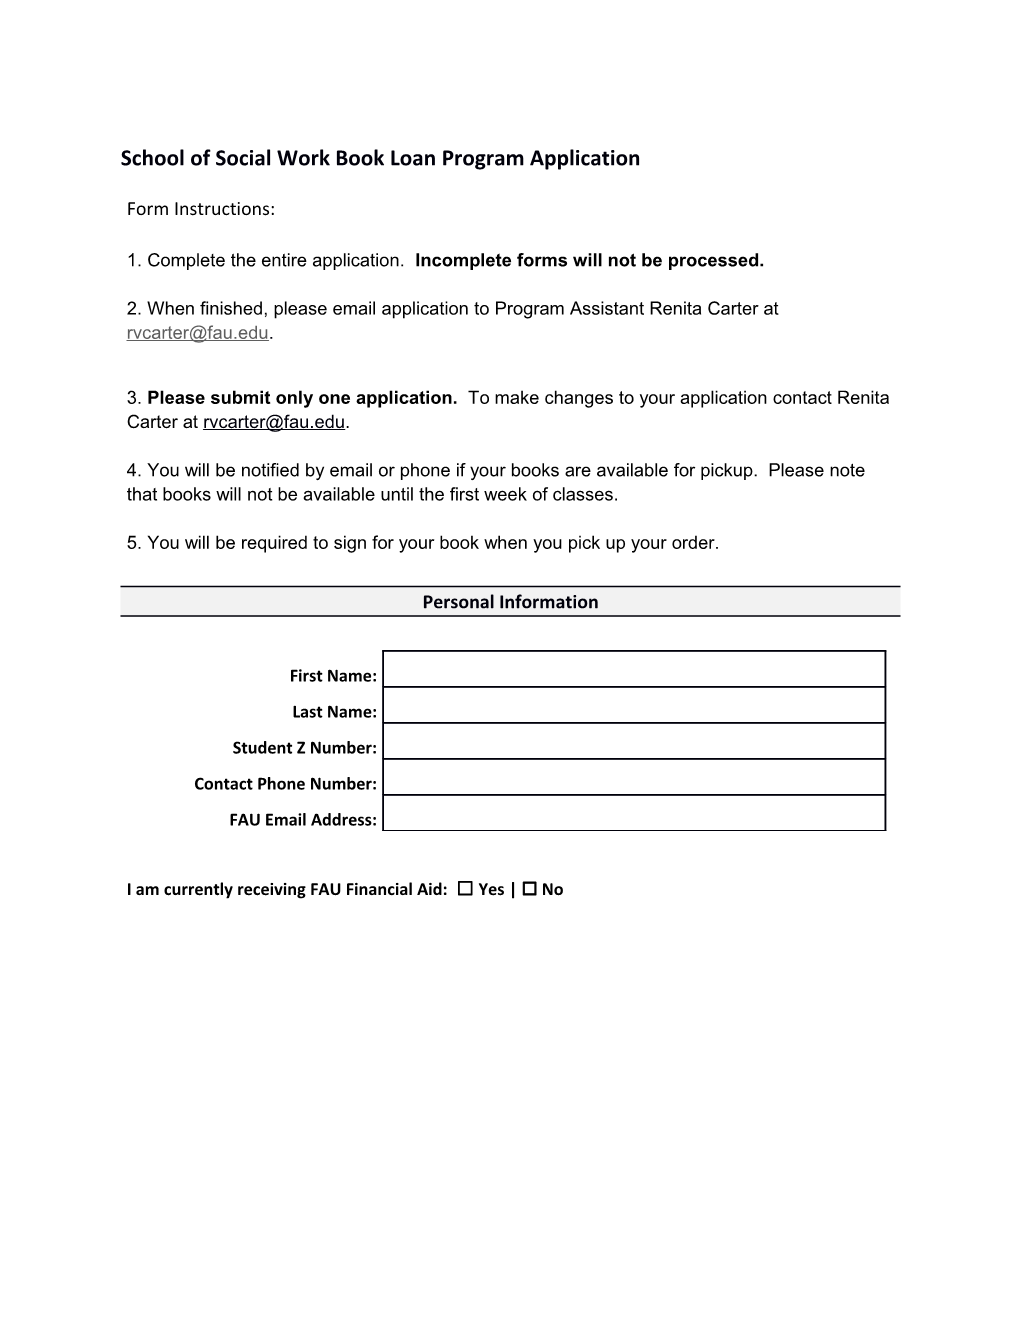 School of Social Work Book Loan Program Application